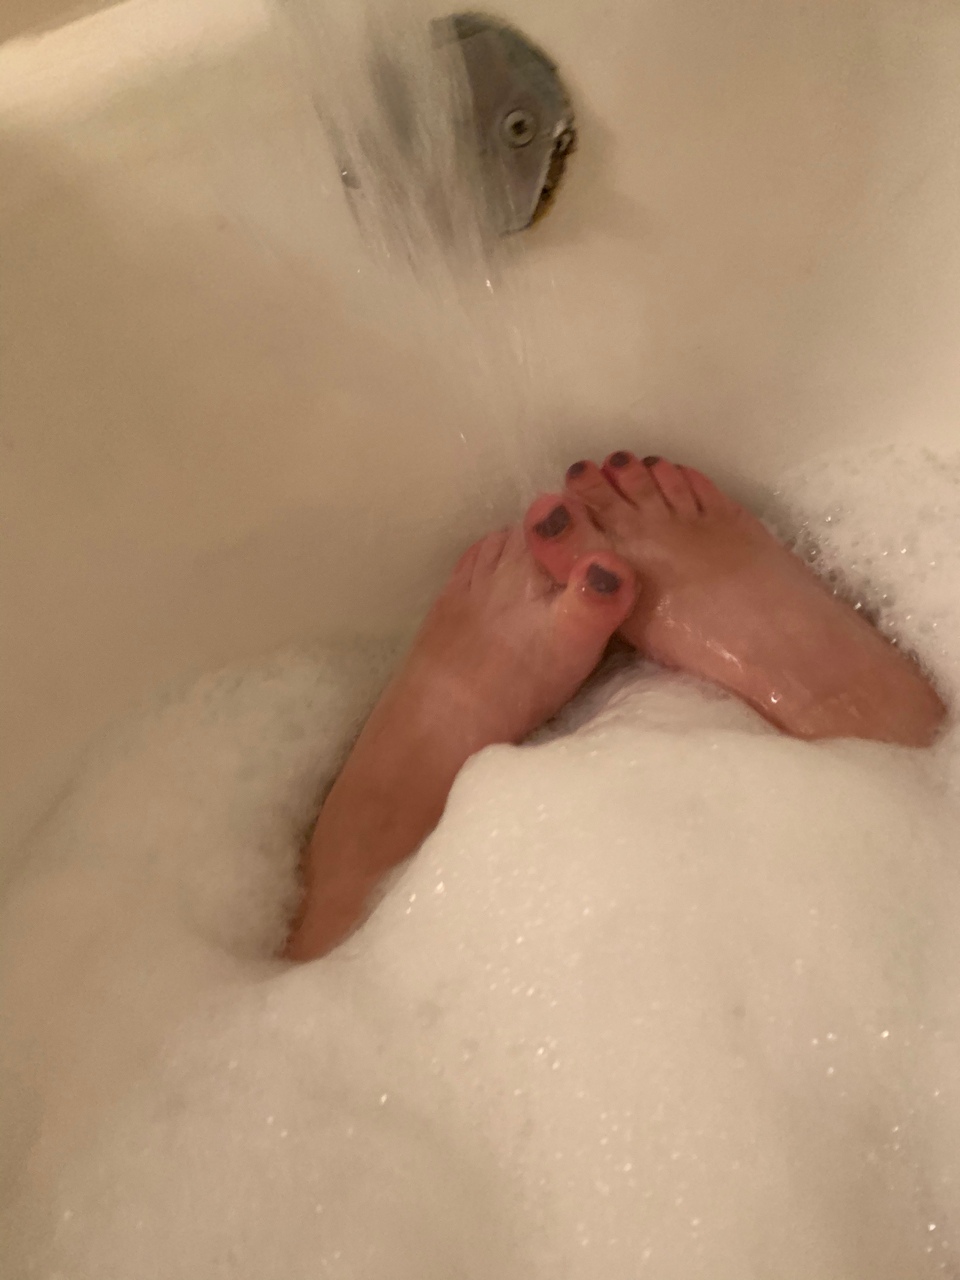 Mariah Feet Bath Time